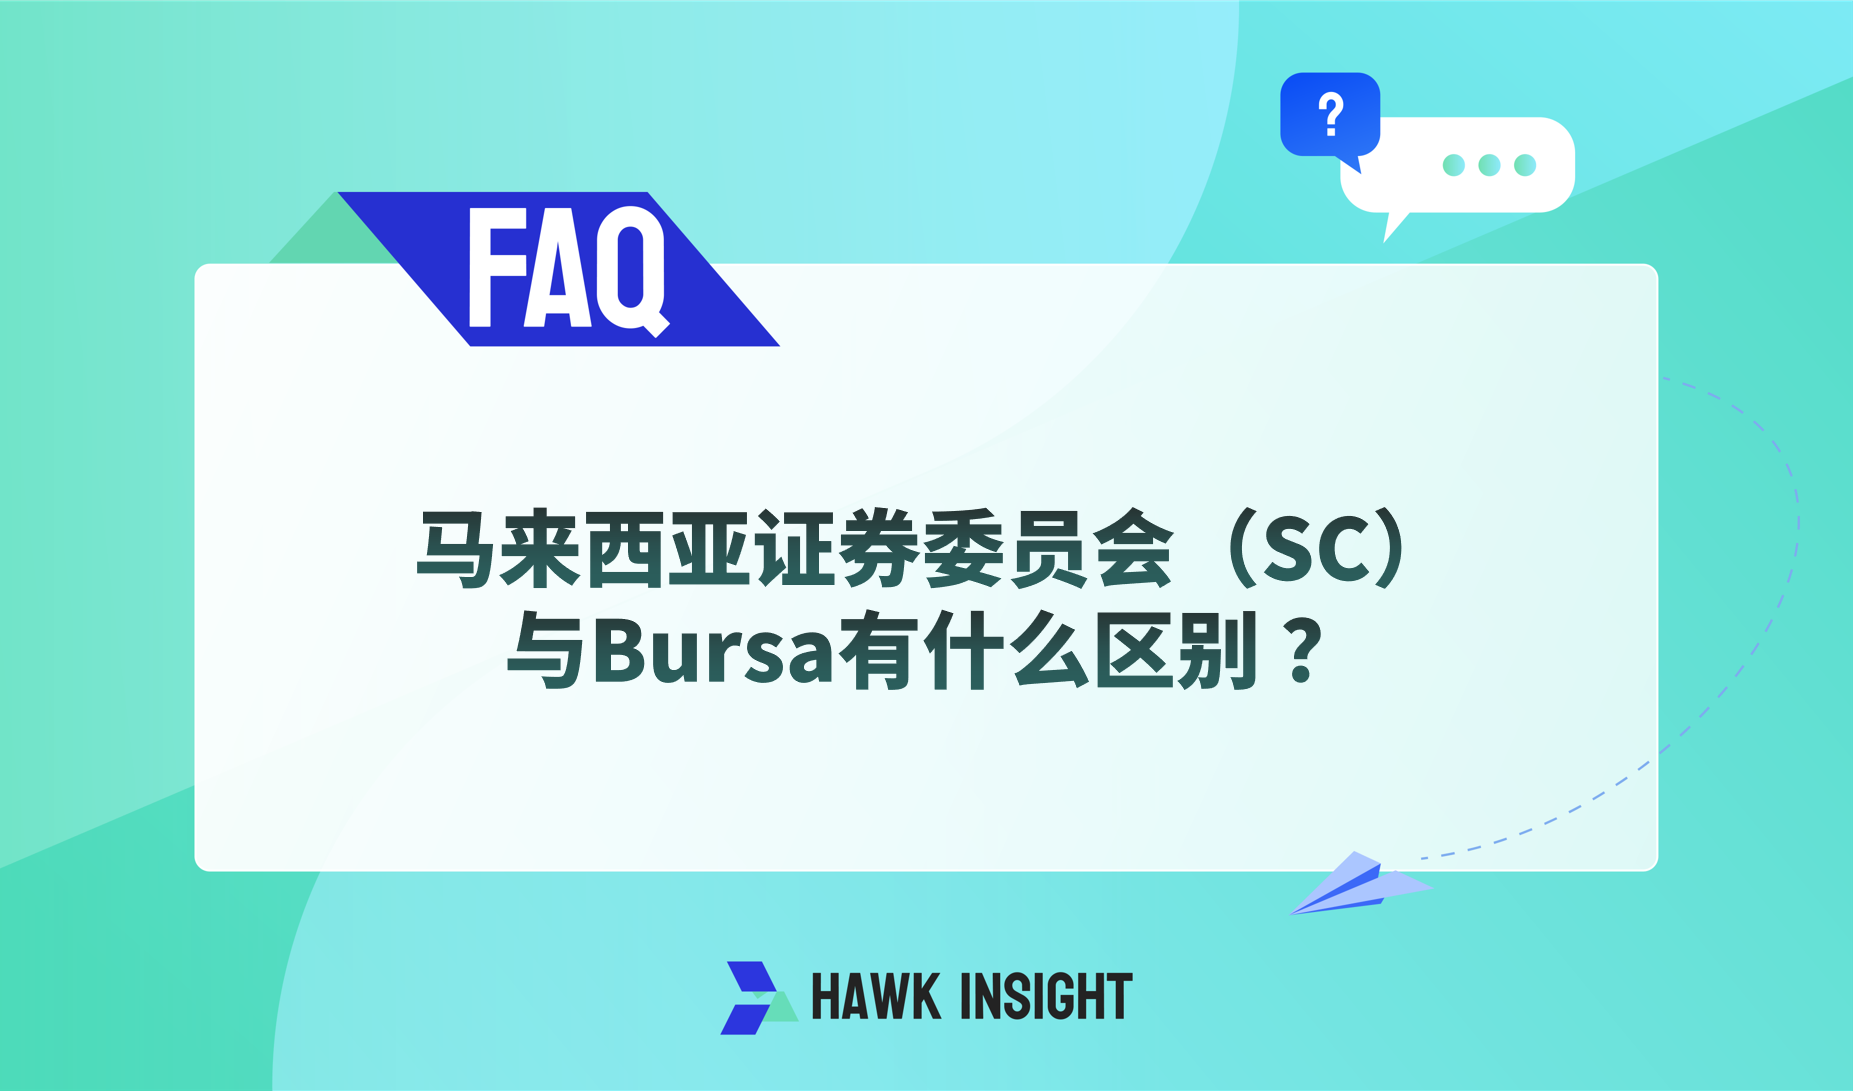 马来西亚证券委员会（SC）与Bursa有什么区别 ？
